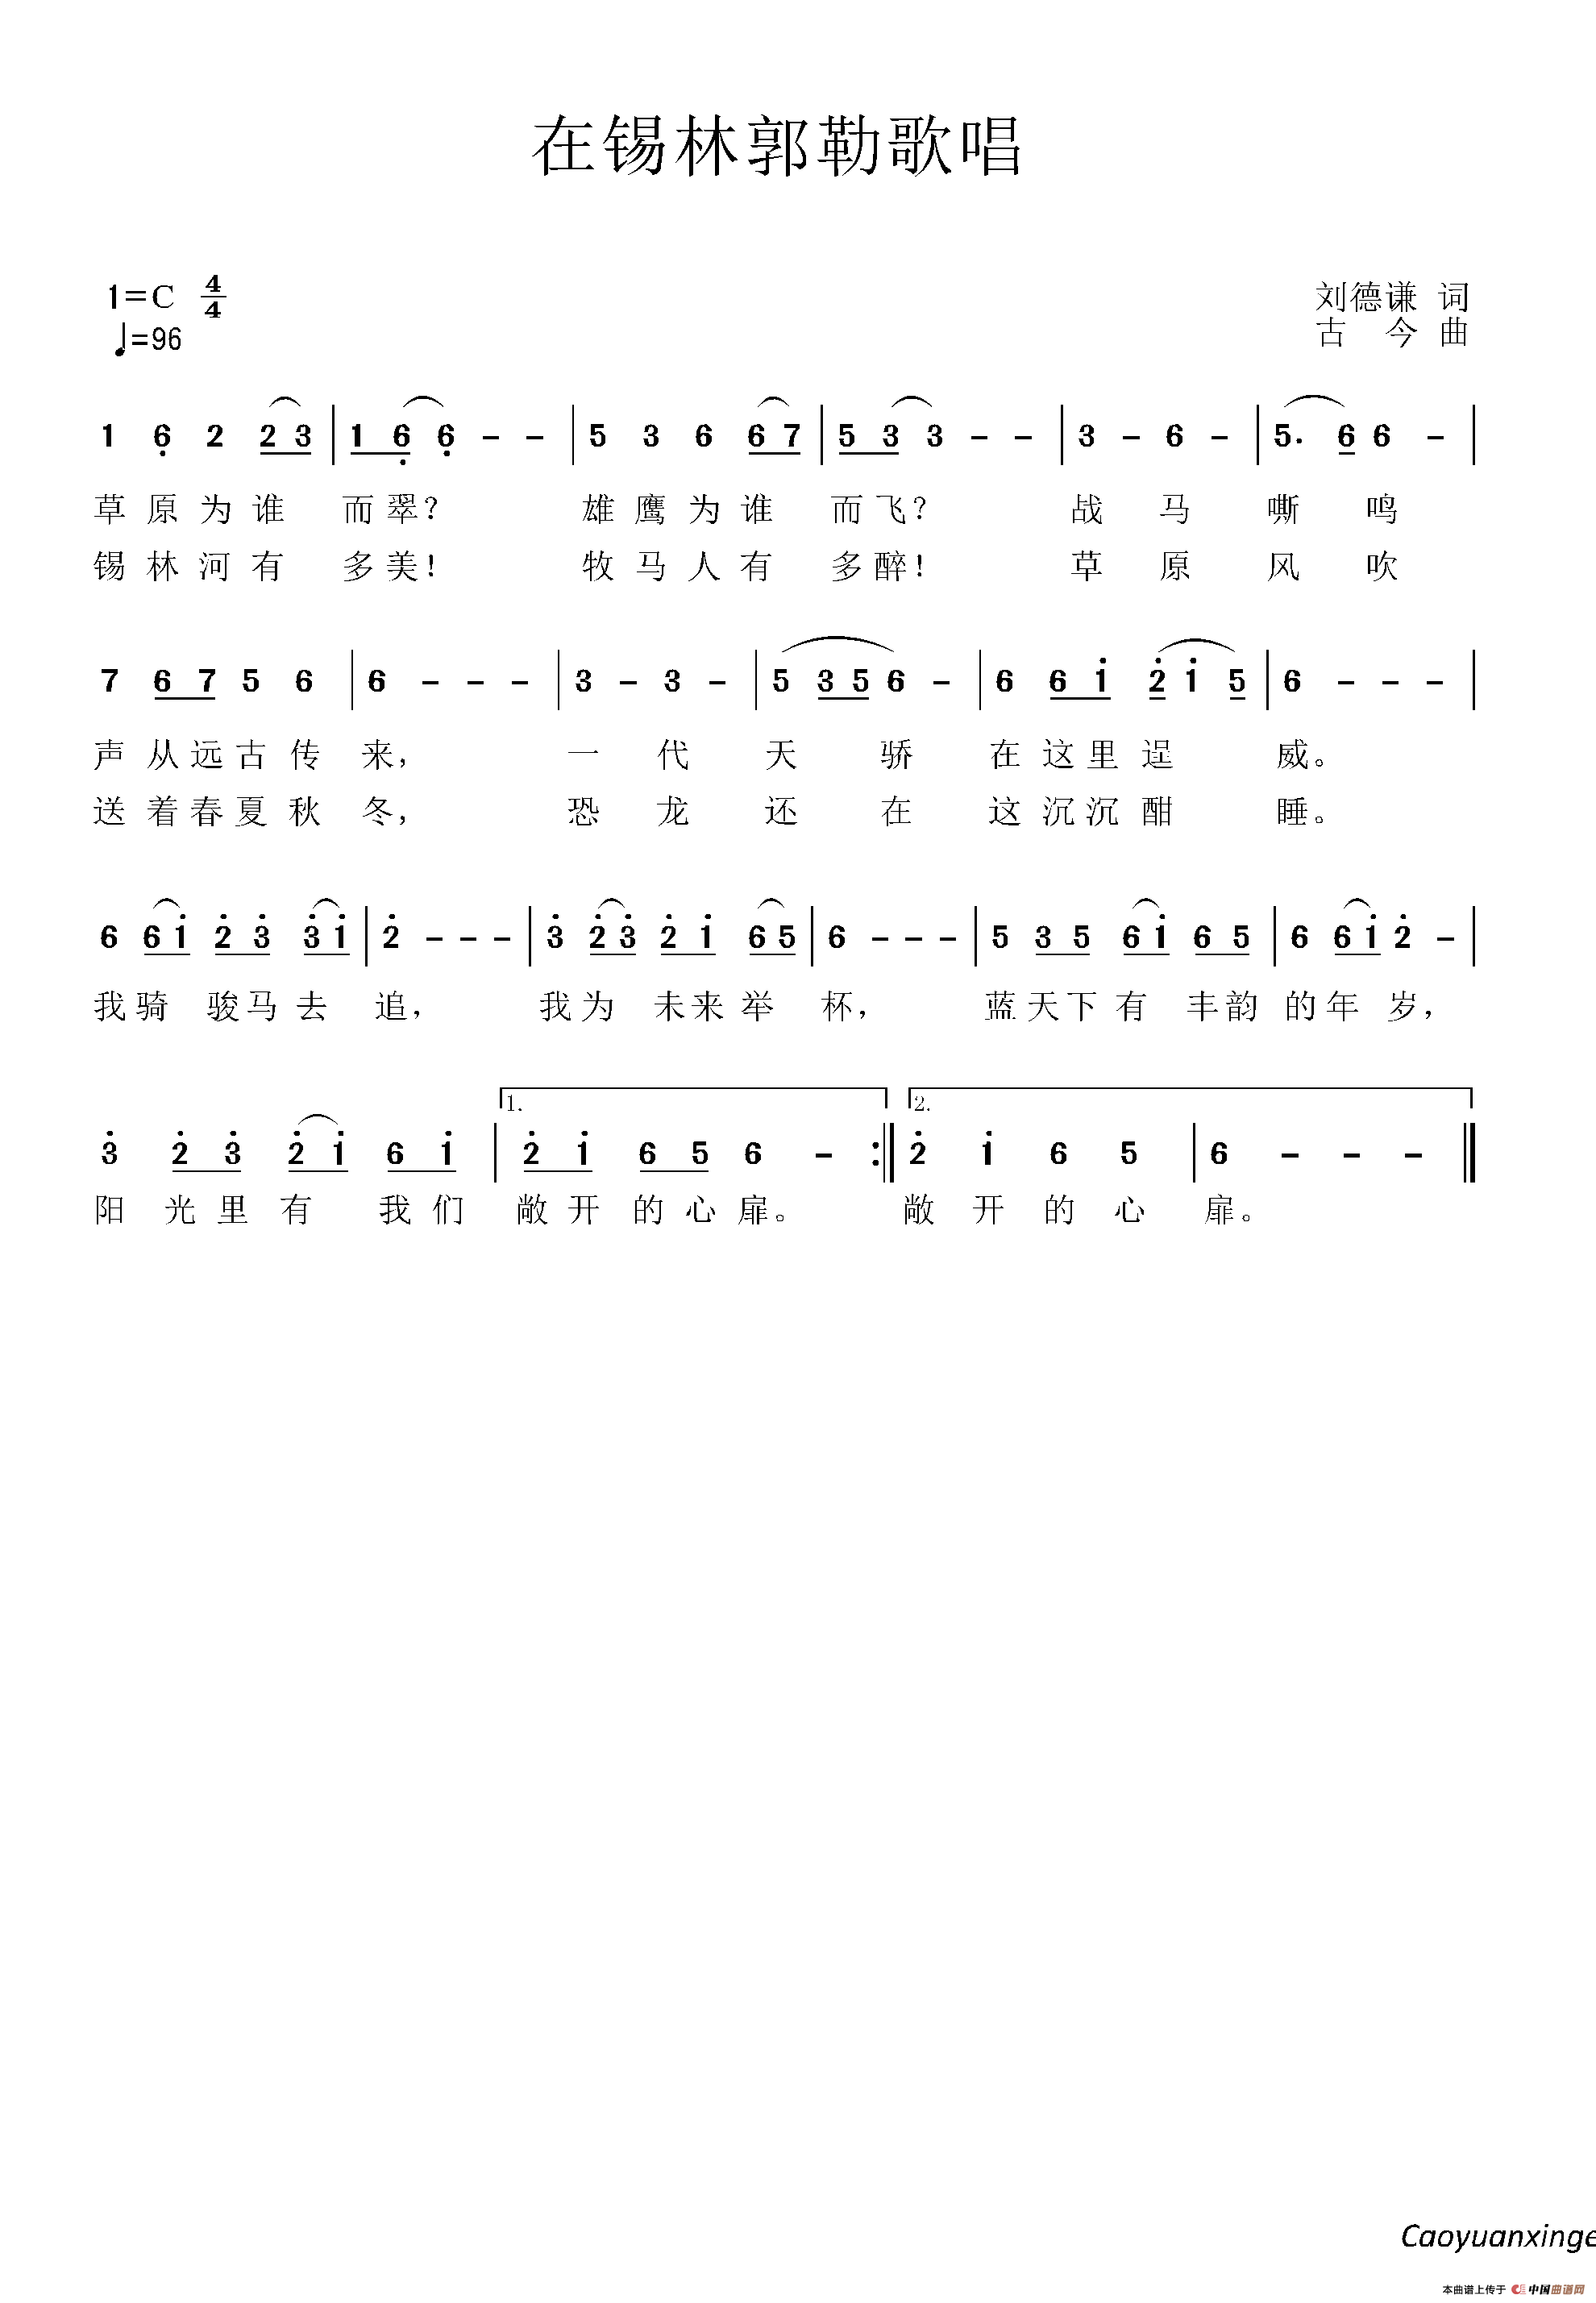 《在锡林郭勒歌唱》曲谱分享，民歌曲谱图